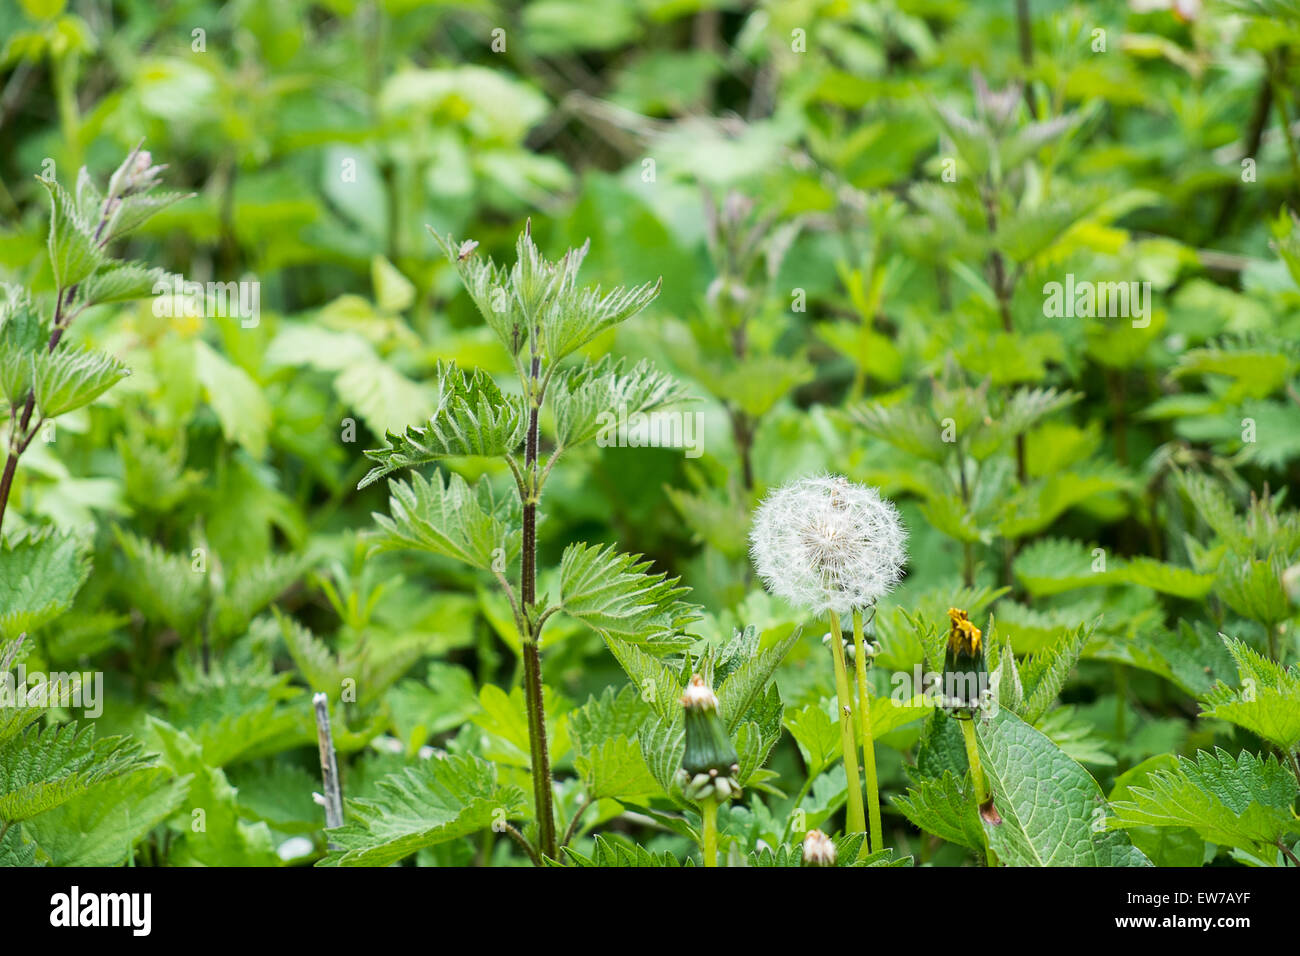 dandelion clock seed head growing wild among nettles Stock Photo